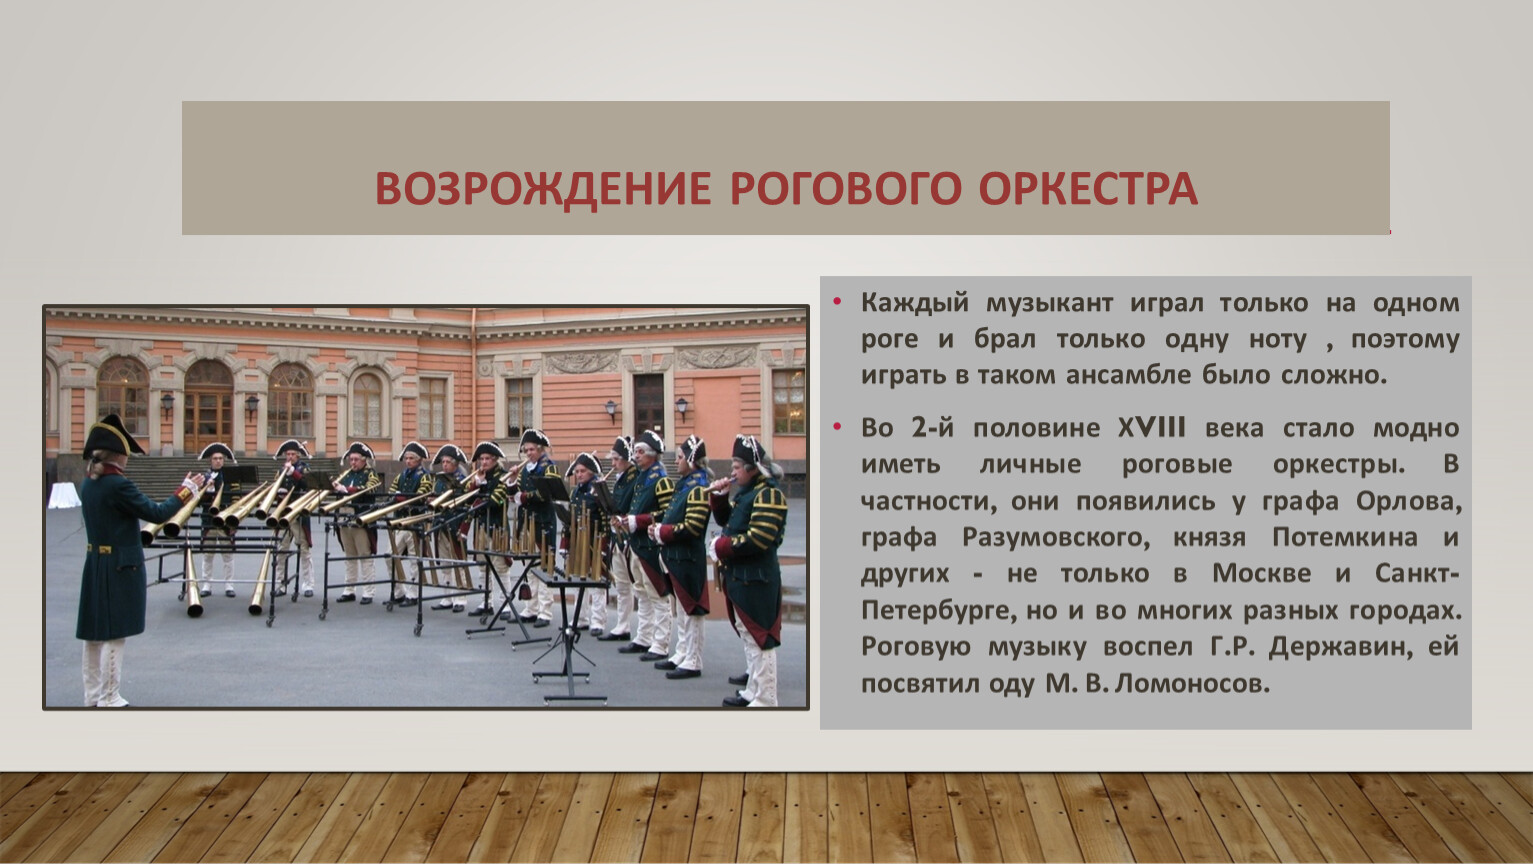 Оркестр в Петровскую эпоху